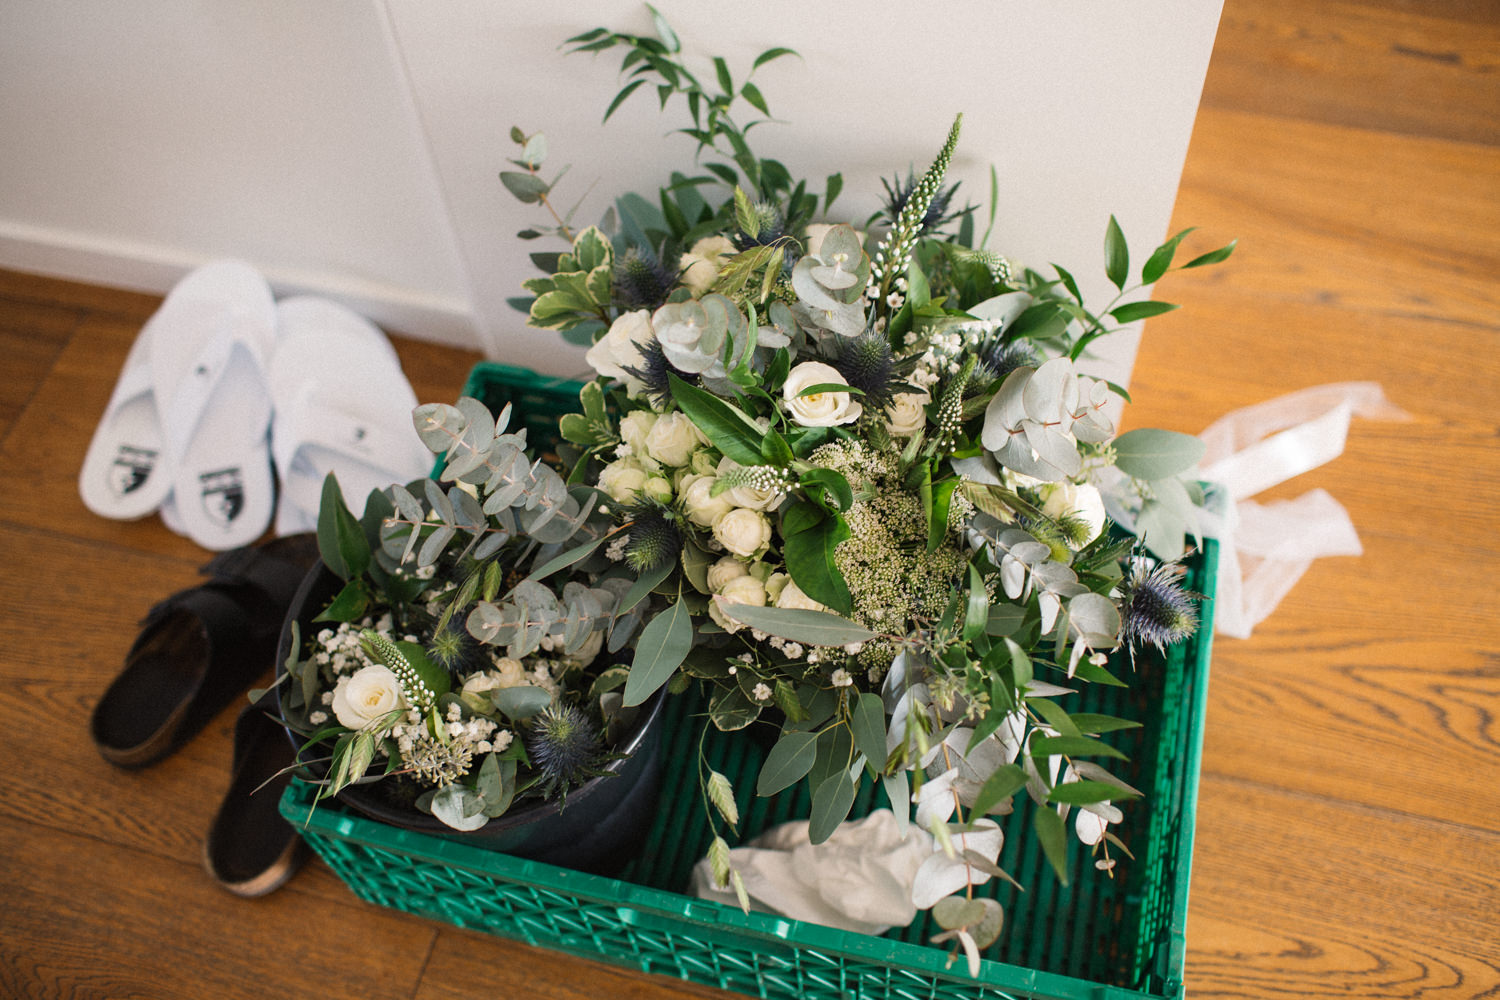 Bröllop på YSB, florist är Elins Blomsterglädje, Ystad.